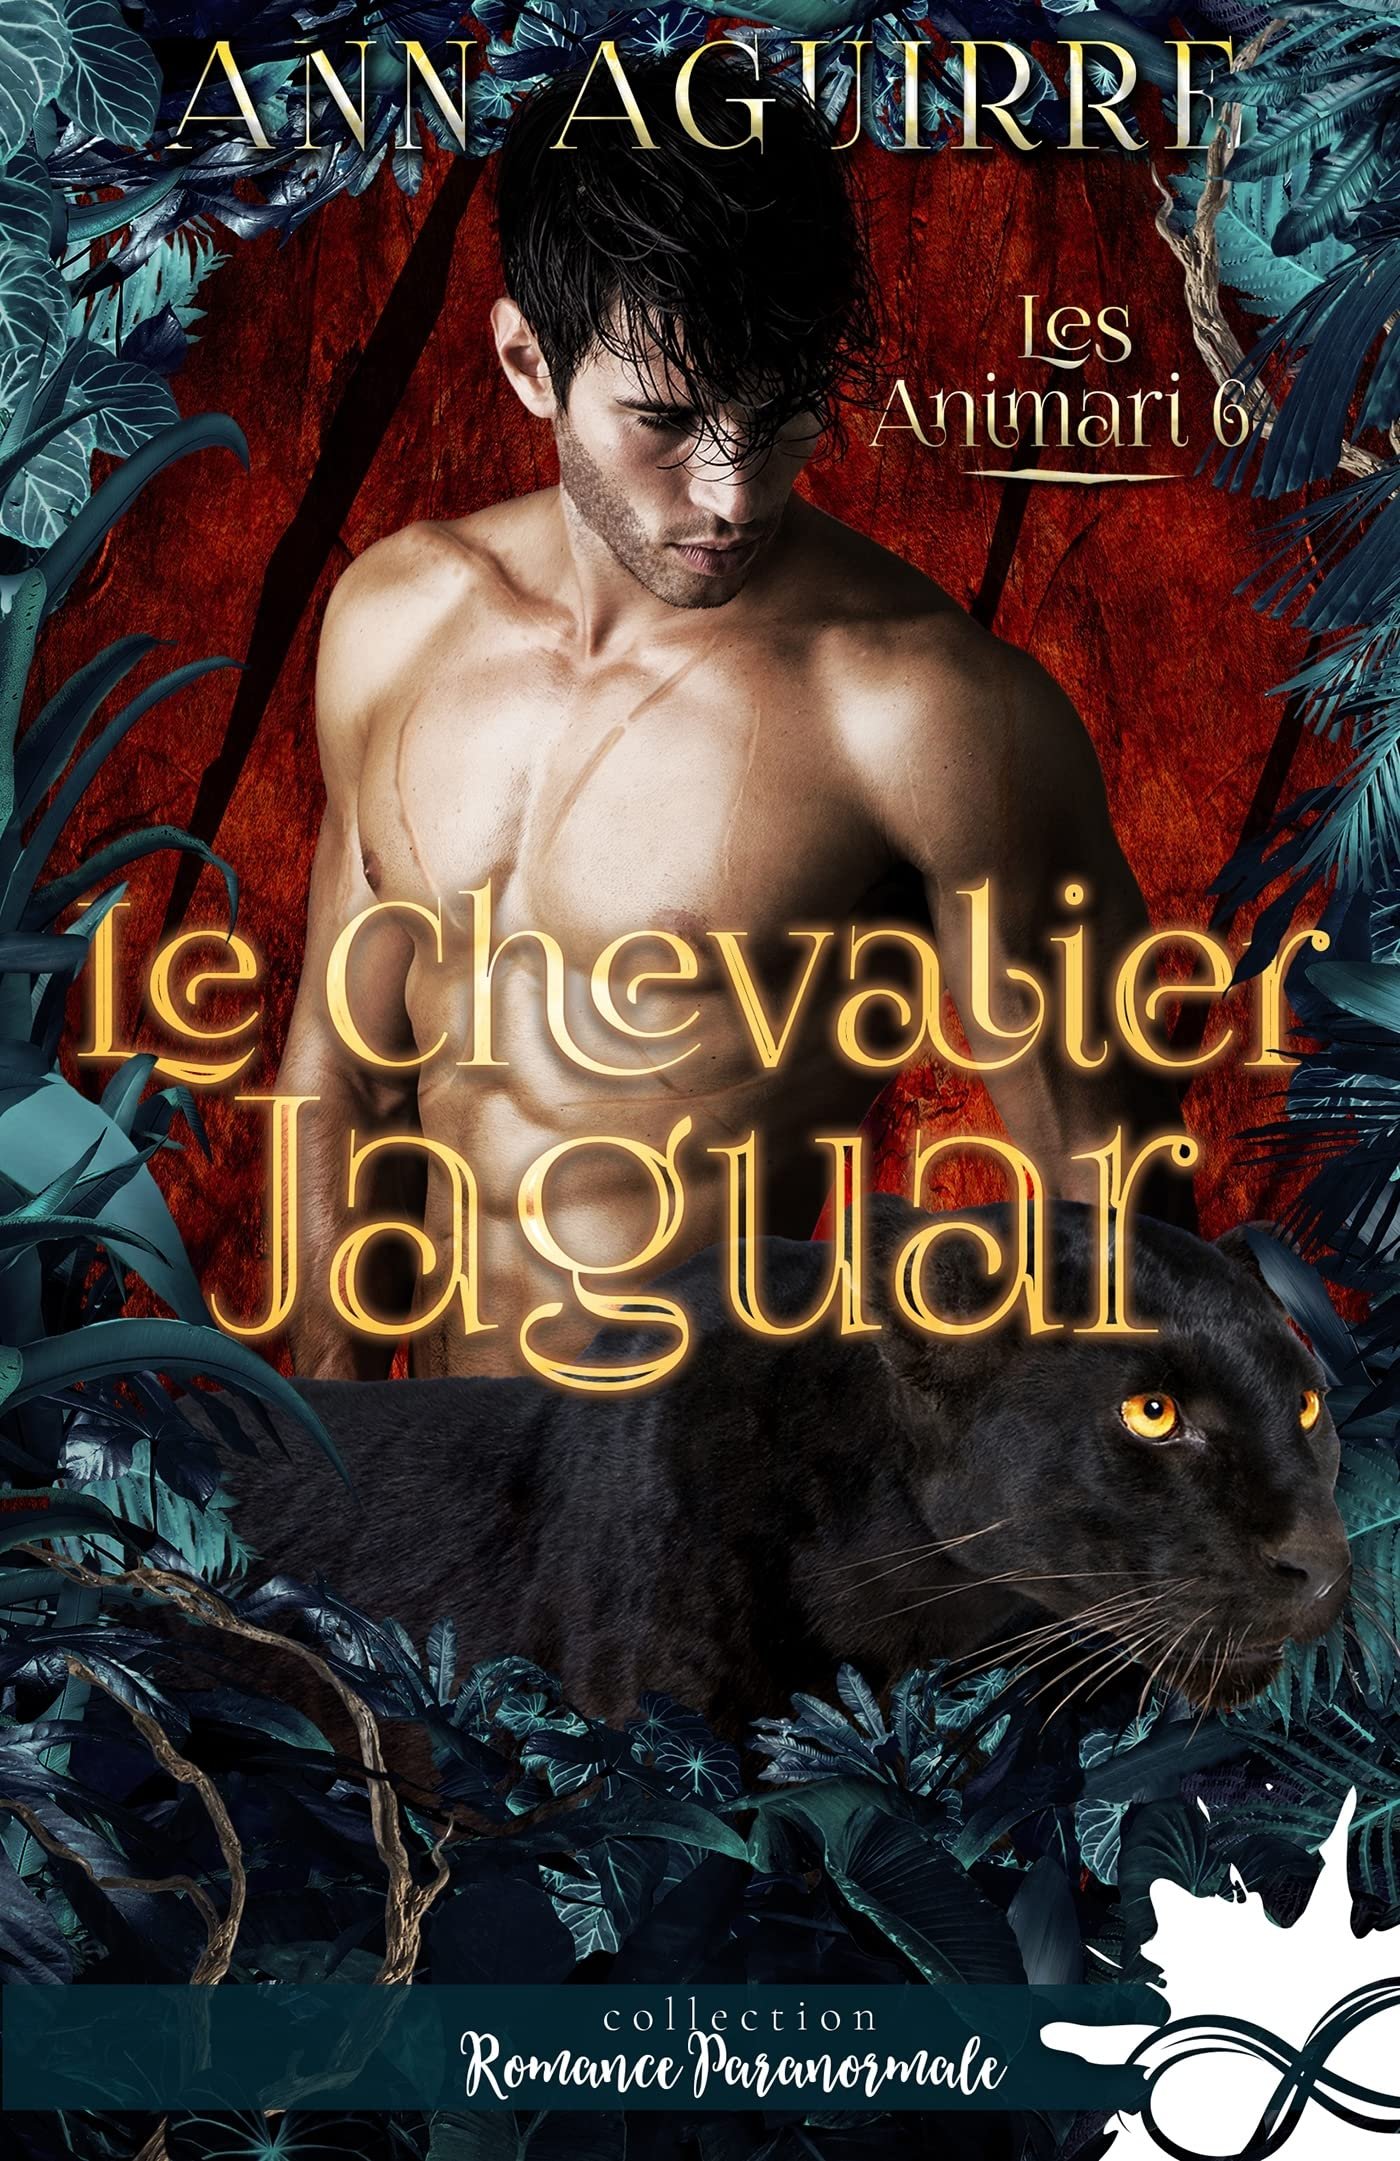 Ann Aguirre – Les Animari, Tome 6 : Le Chevalier jaguar